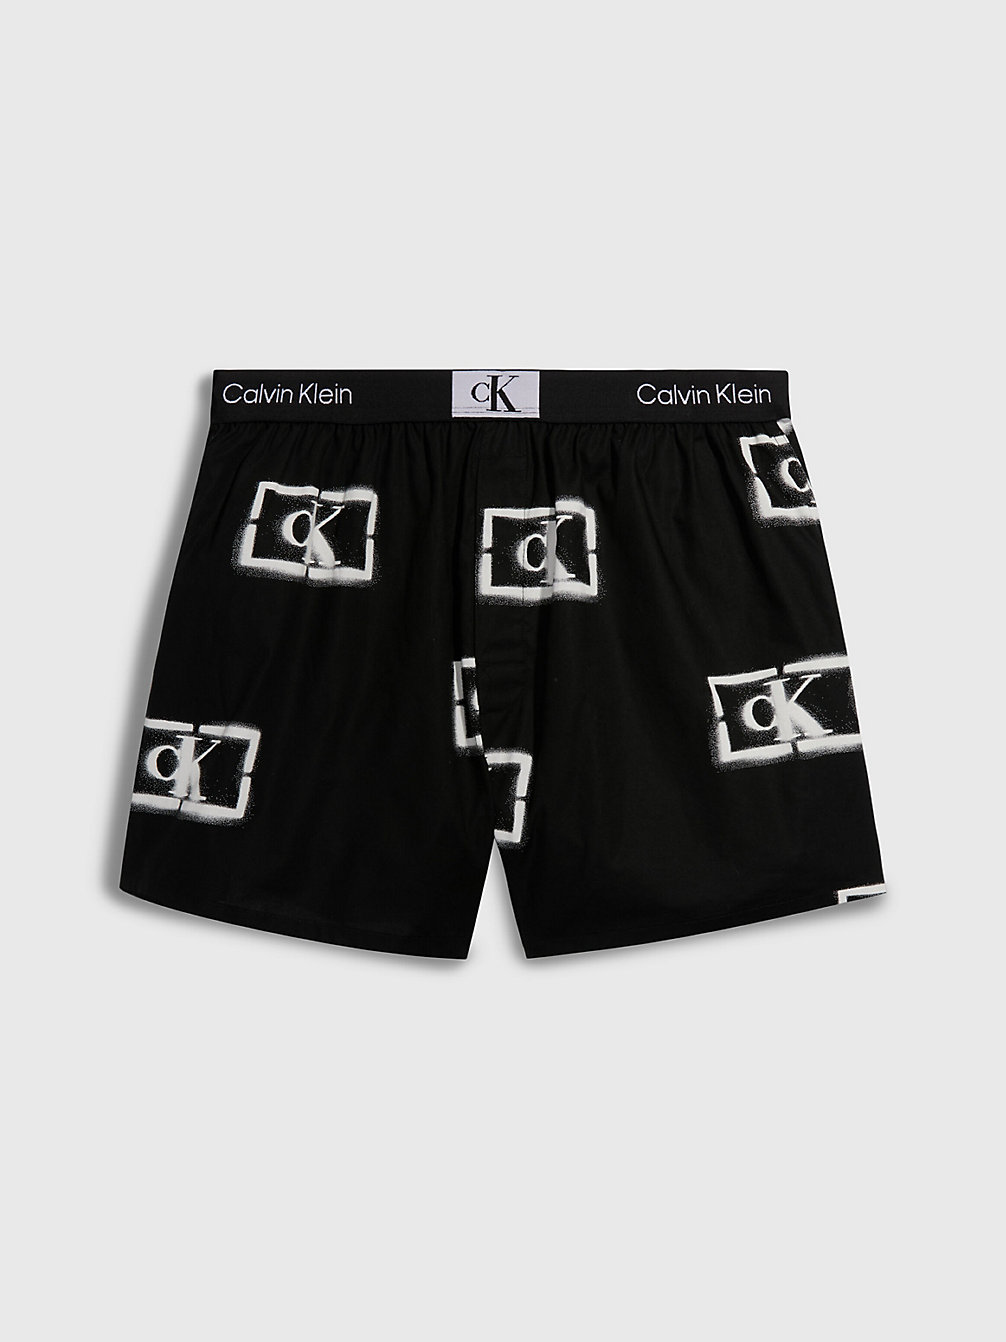 STENCIL LOGO PRINT_BLACK Boxershorts - Ck96 undefined Herren Calvin Klein